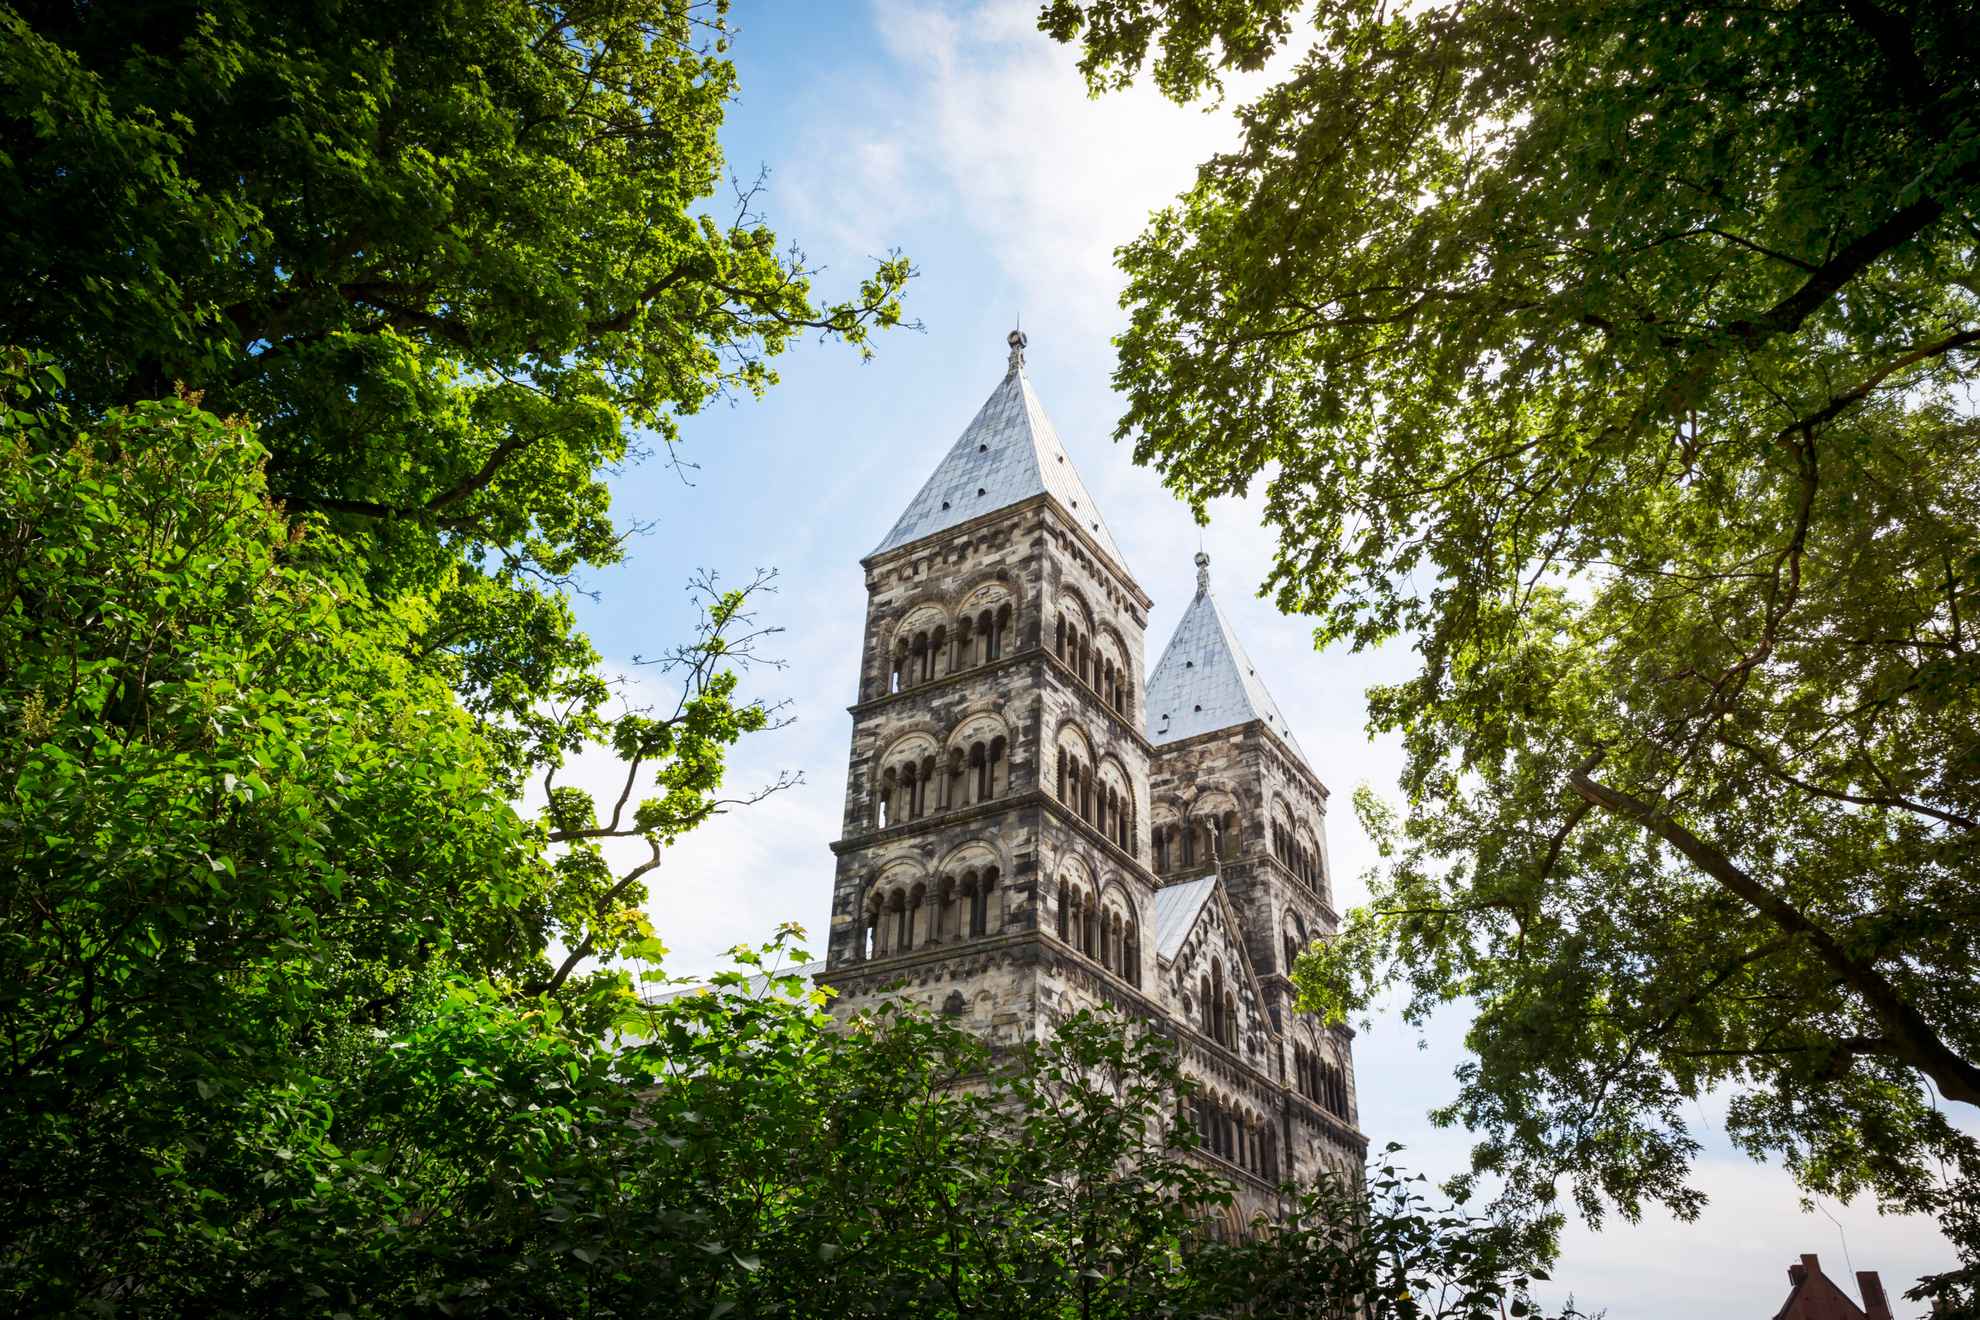 Een foto in kikvorsperspectief van de torens van de stenen kathedraal van Lund, genomen van tussen de bomen.